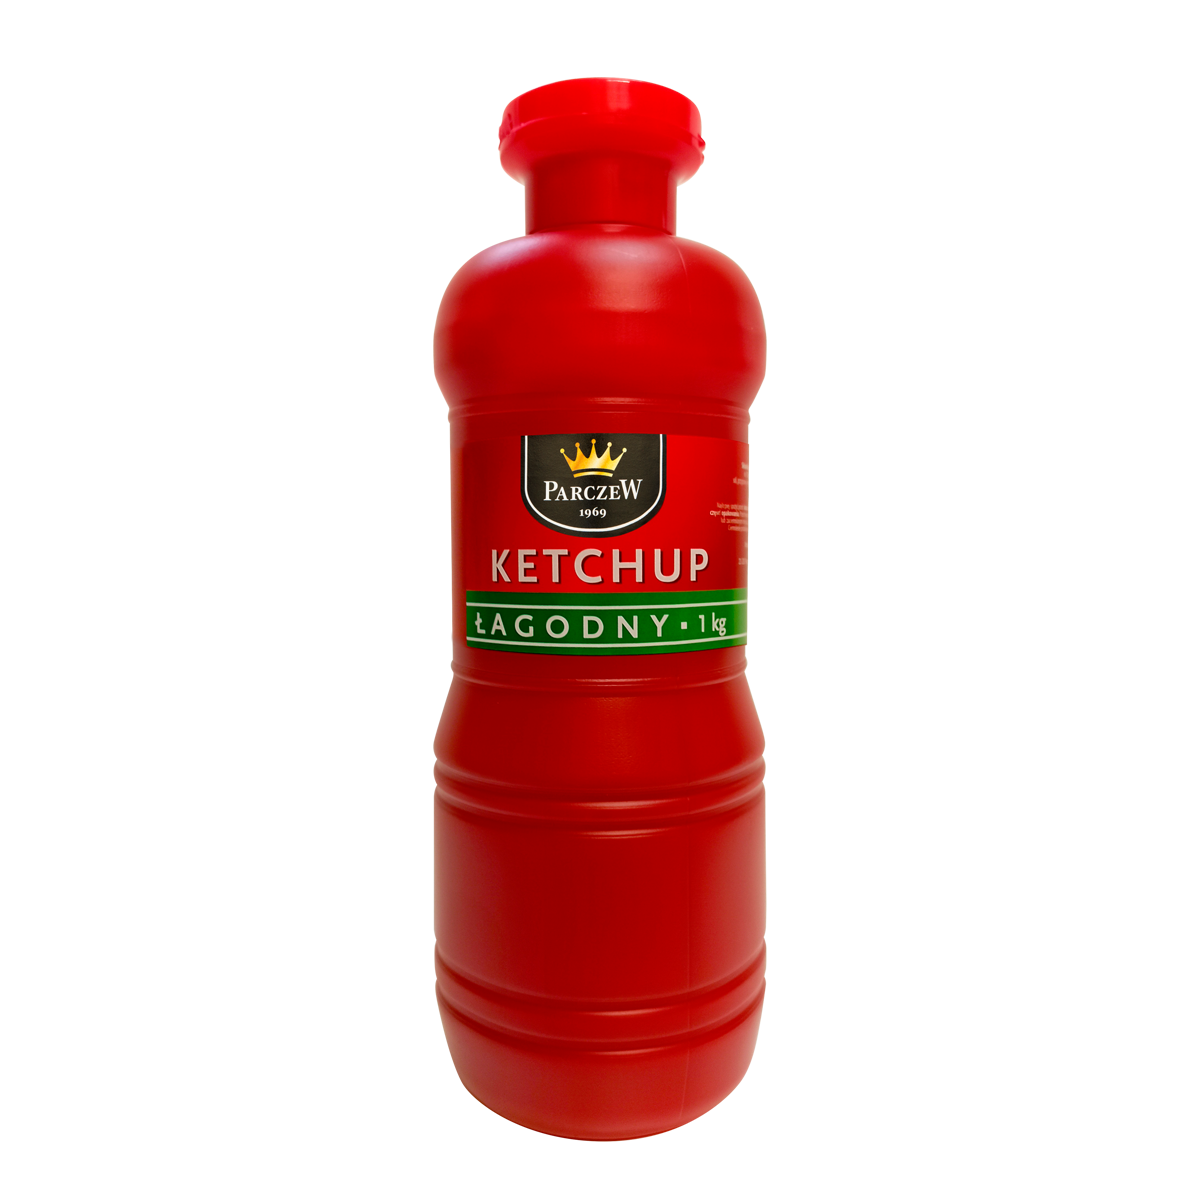 Ketchup_Lagodny_1kg